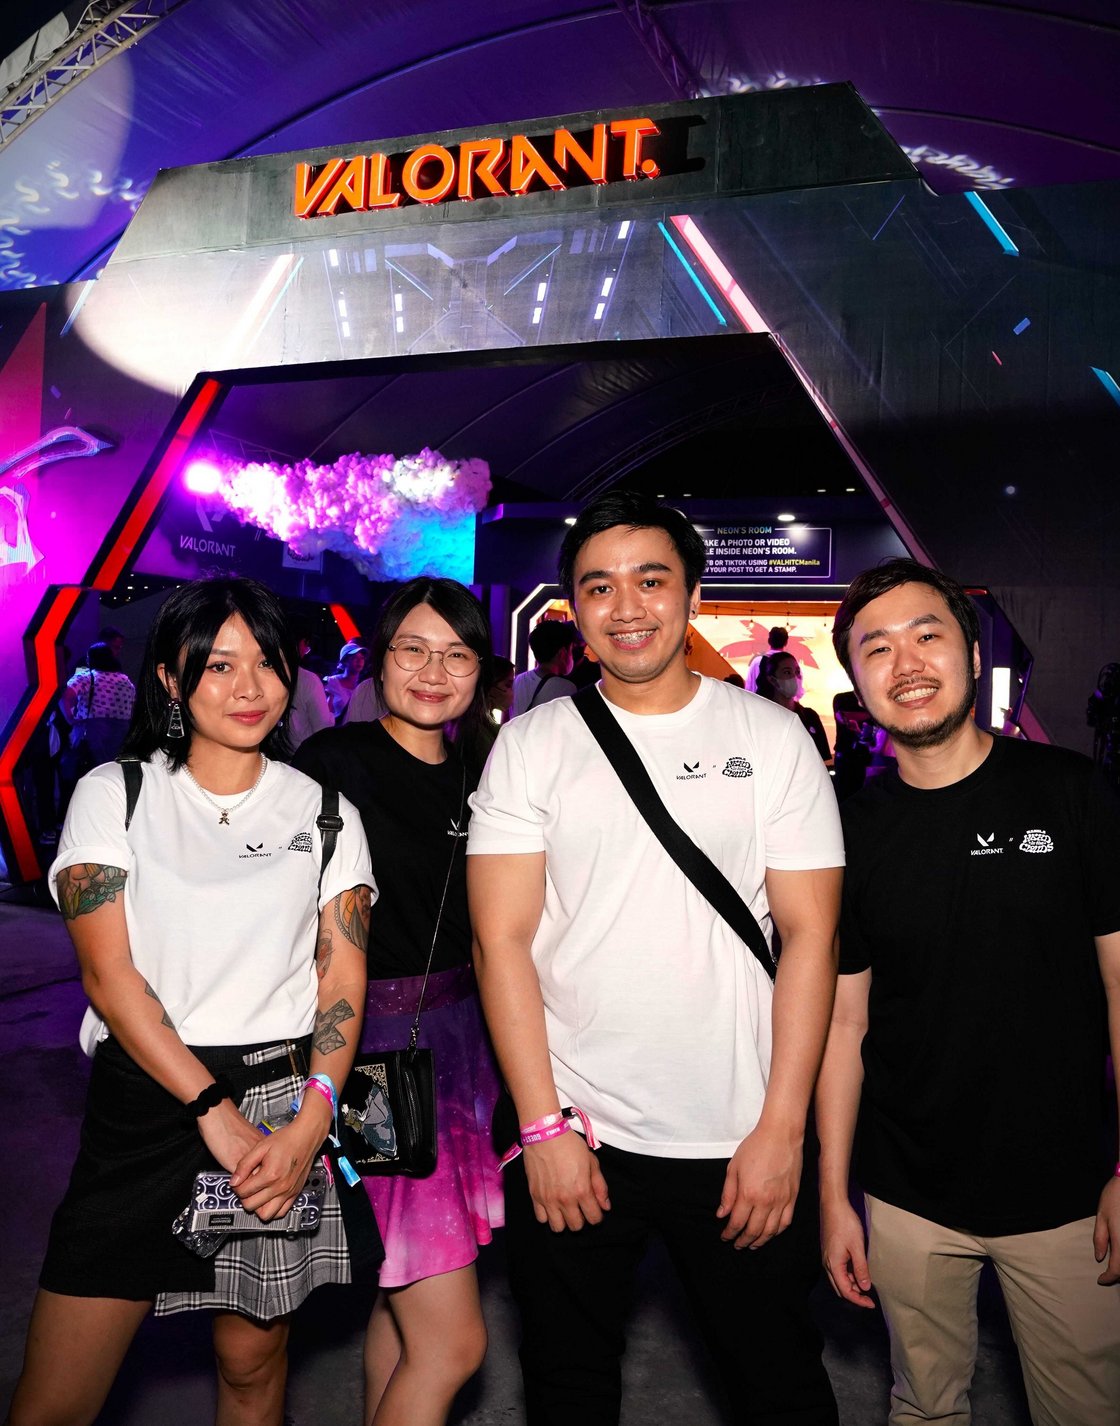 VALORANT gaming community in Singapore